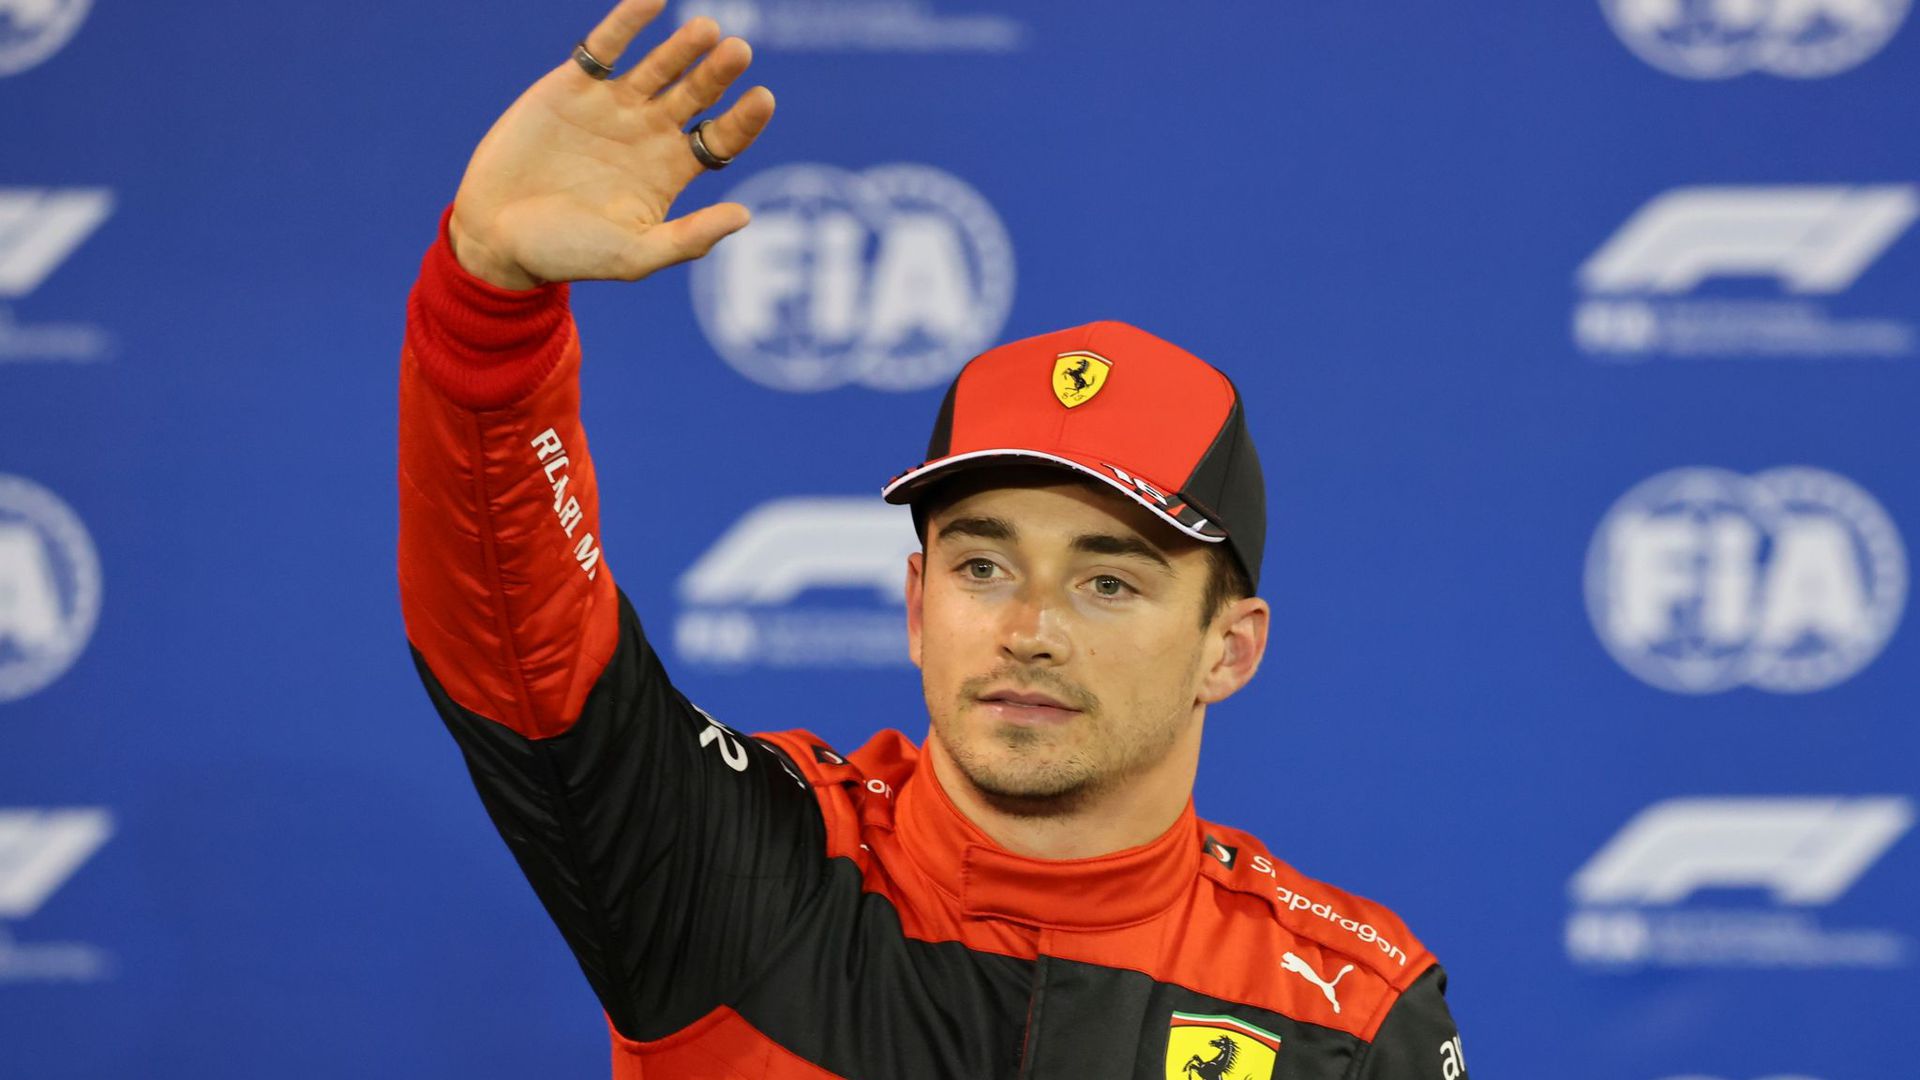 Ferrari-Pilot Charles Leclerc aus Monaco feiert seine Pole Position in Bahrain.